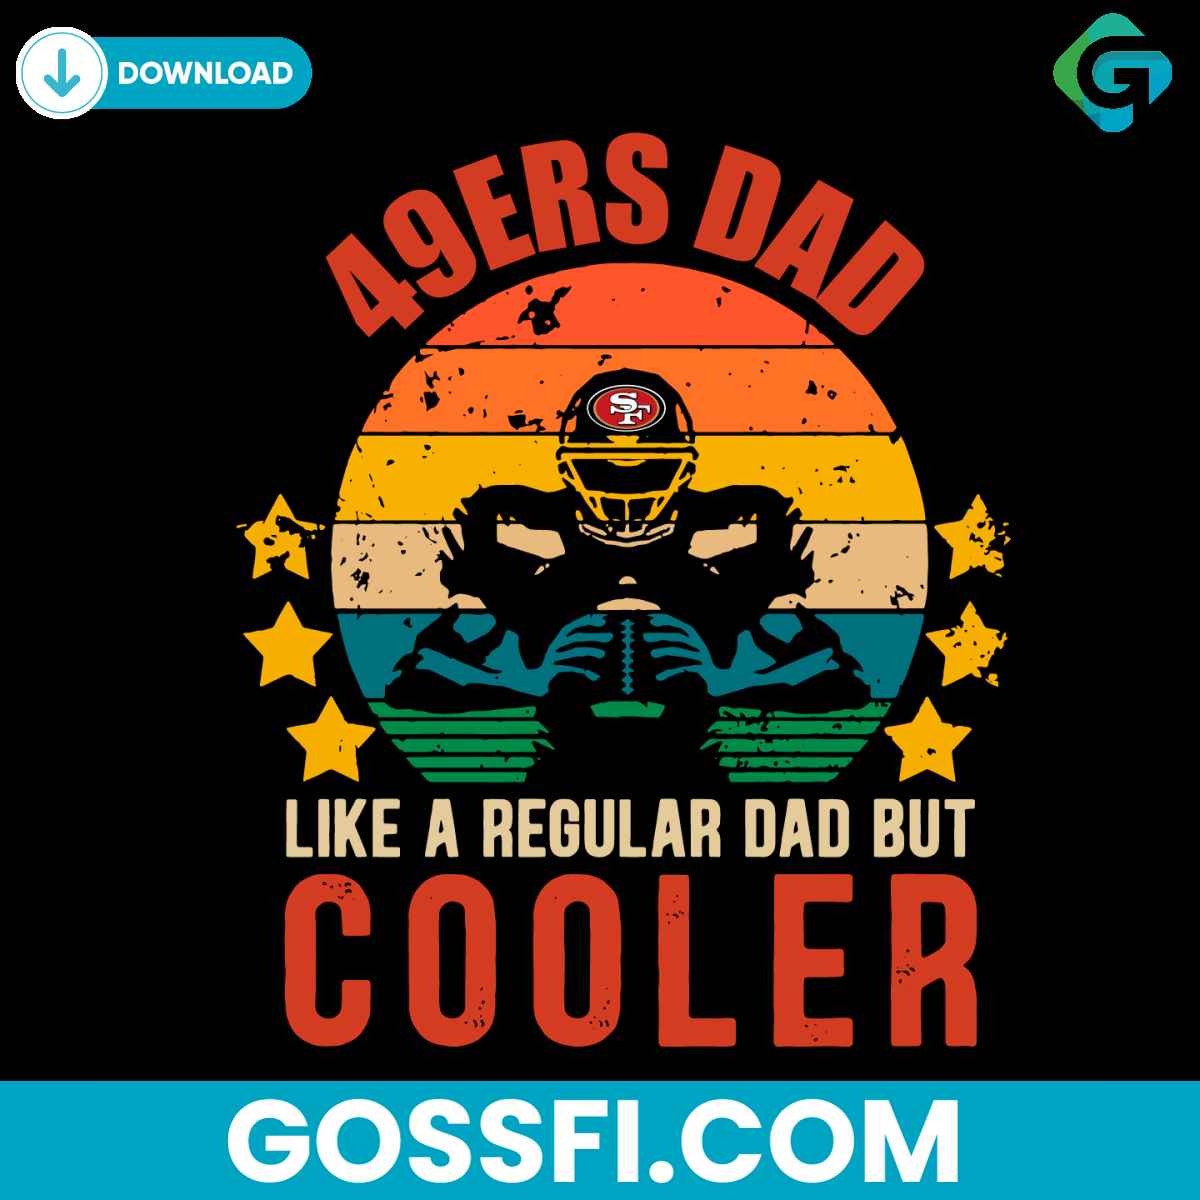 49ers-dad-like-a-regular-dad-but-cooler-svg